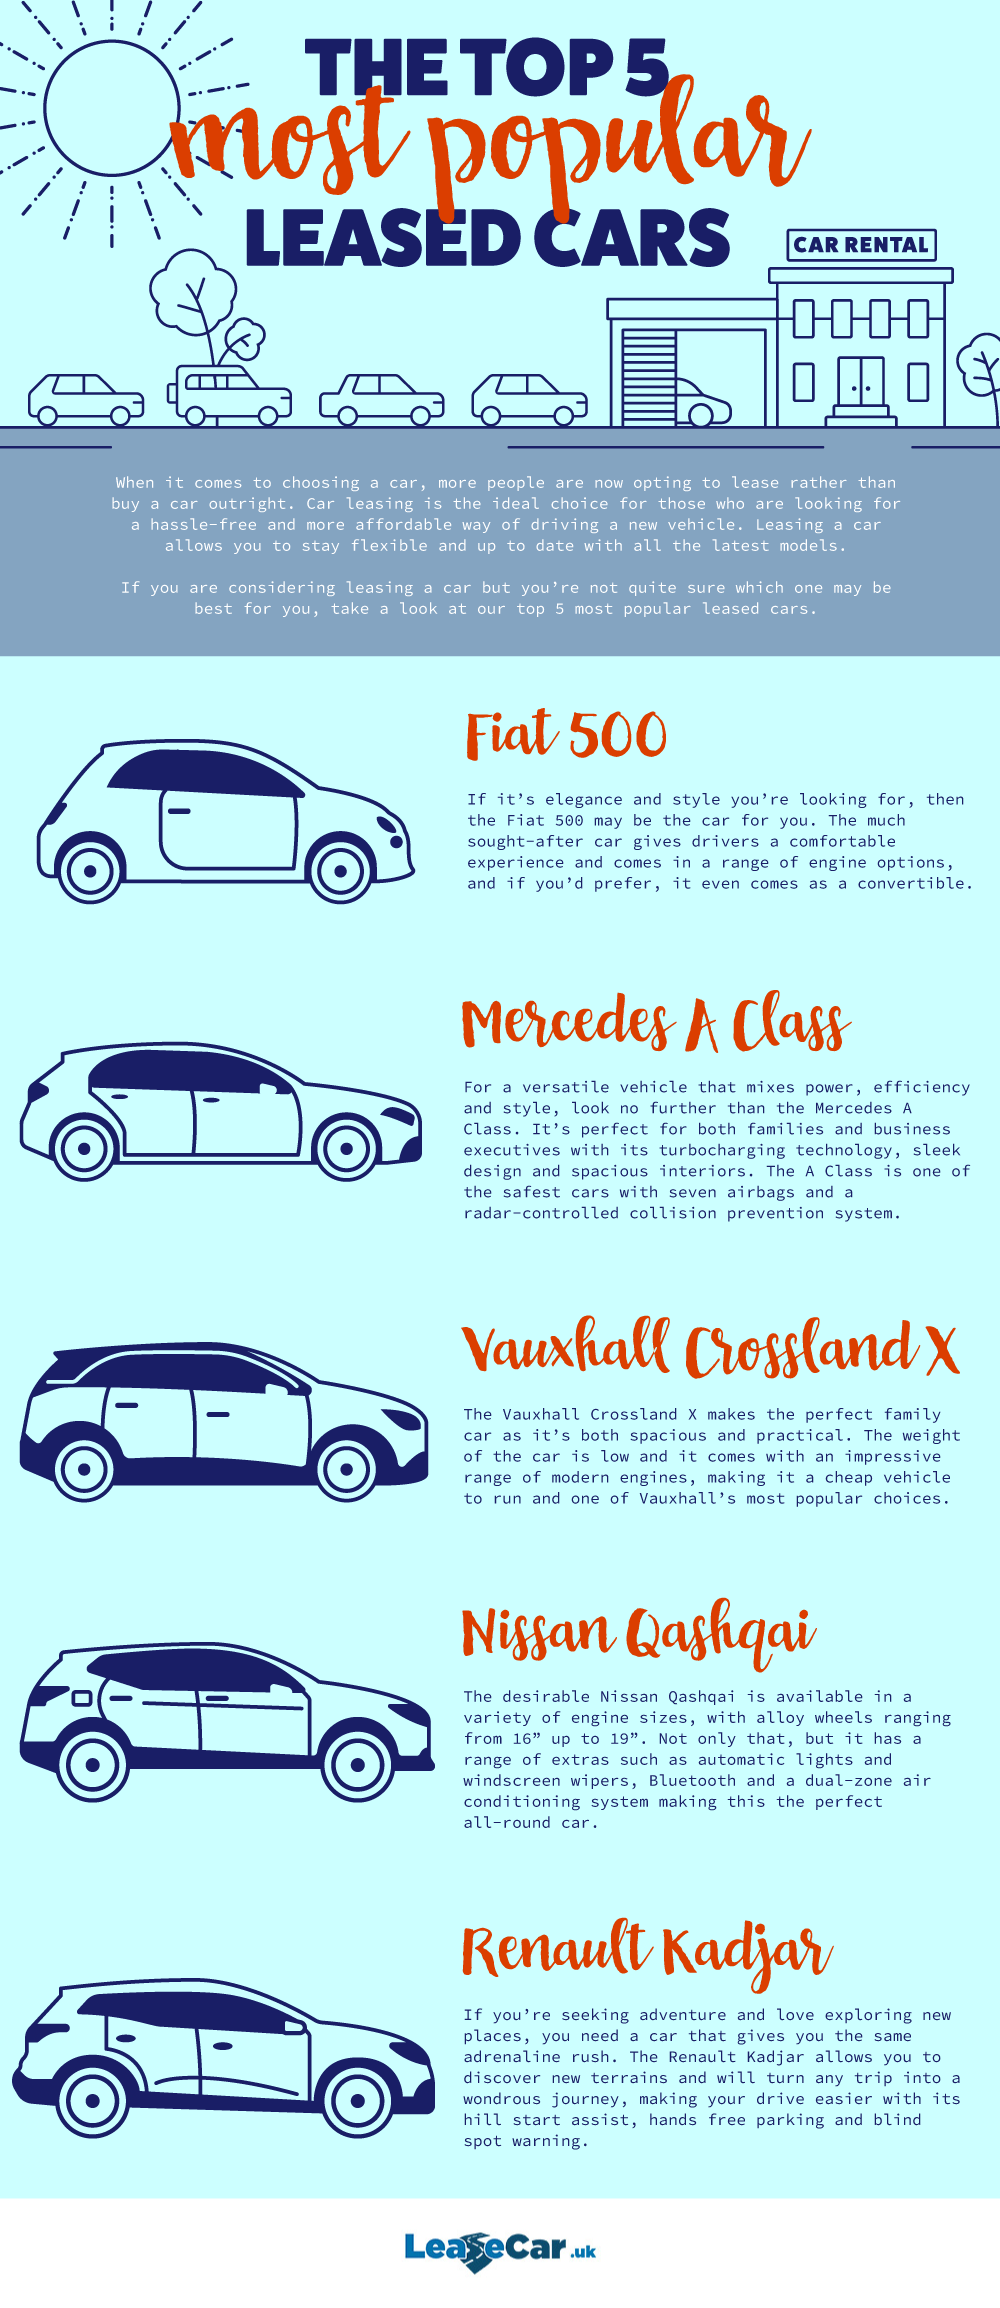 LeaseCarUK -Top-5-rental-cars (1)